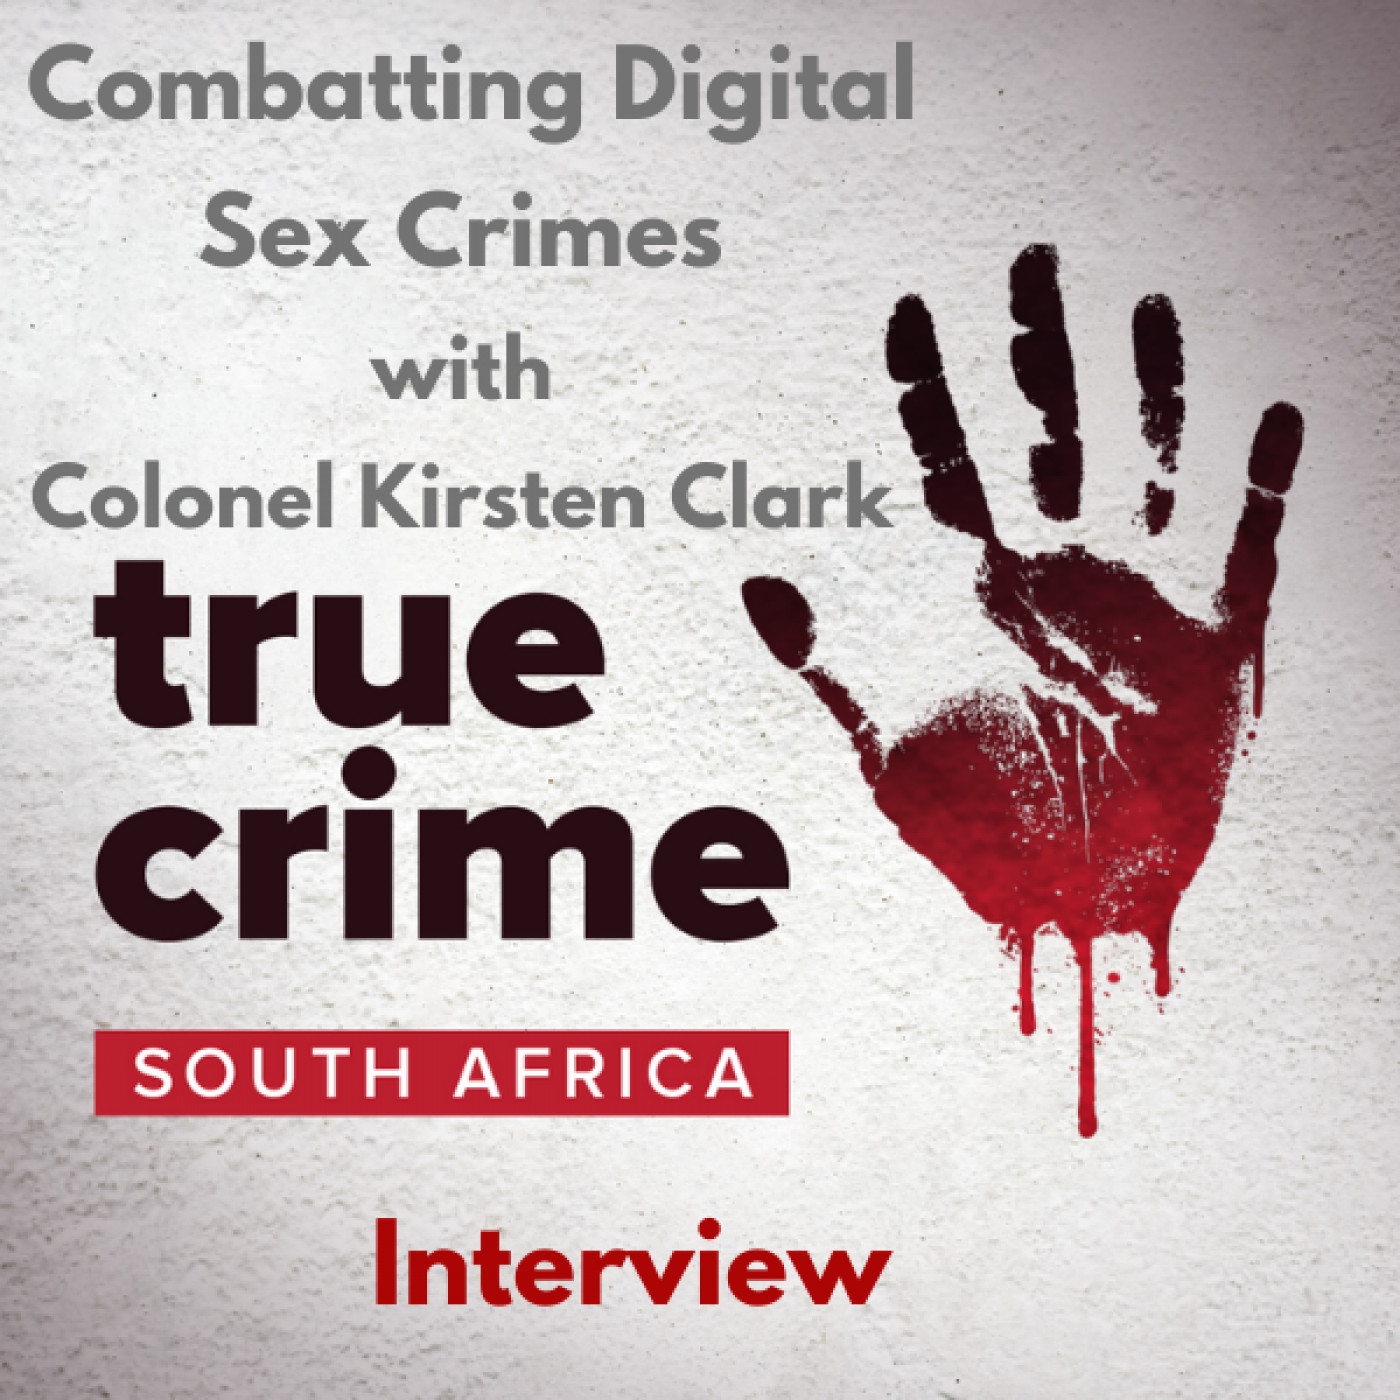 Combatting Digital Sex Crimes with Colonel Kirsten Clark